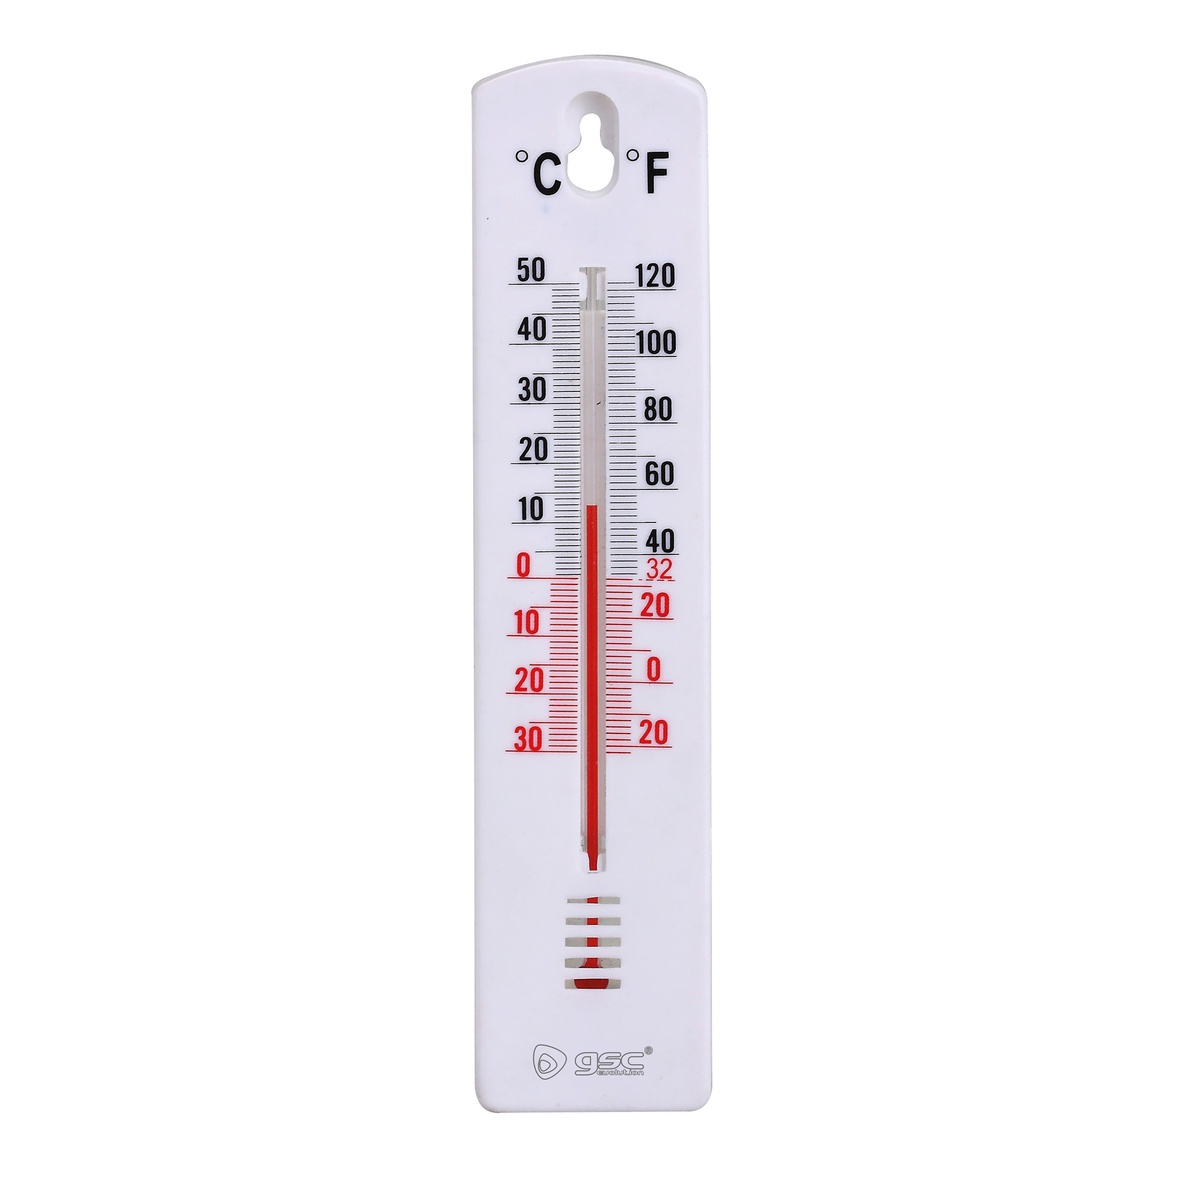 Celsius / Fahrenheit analogic hermometer